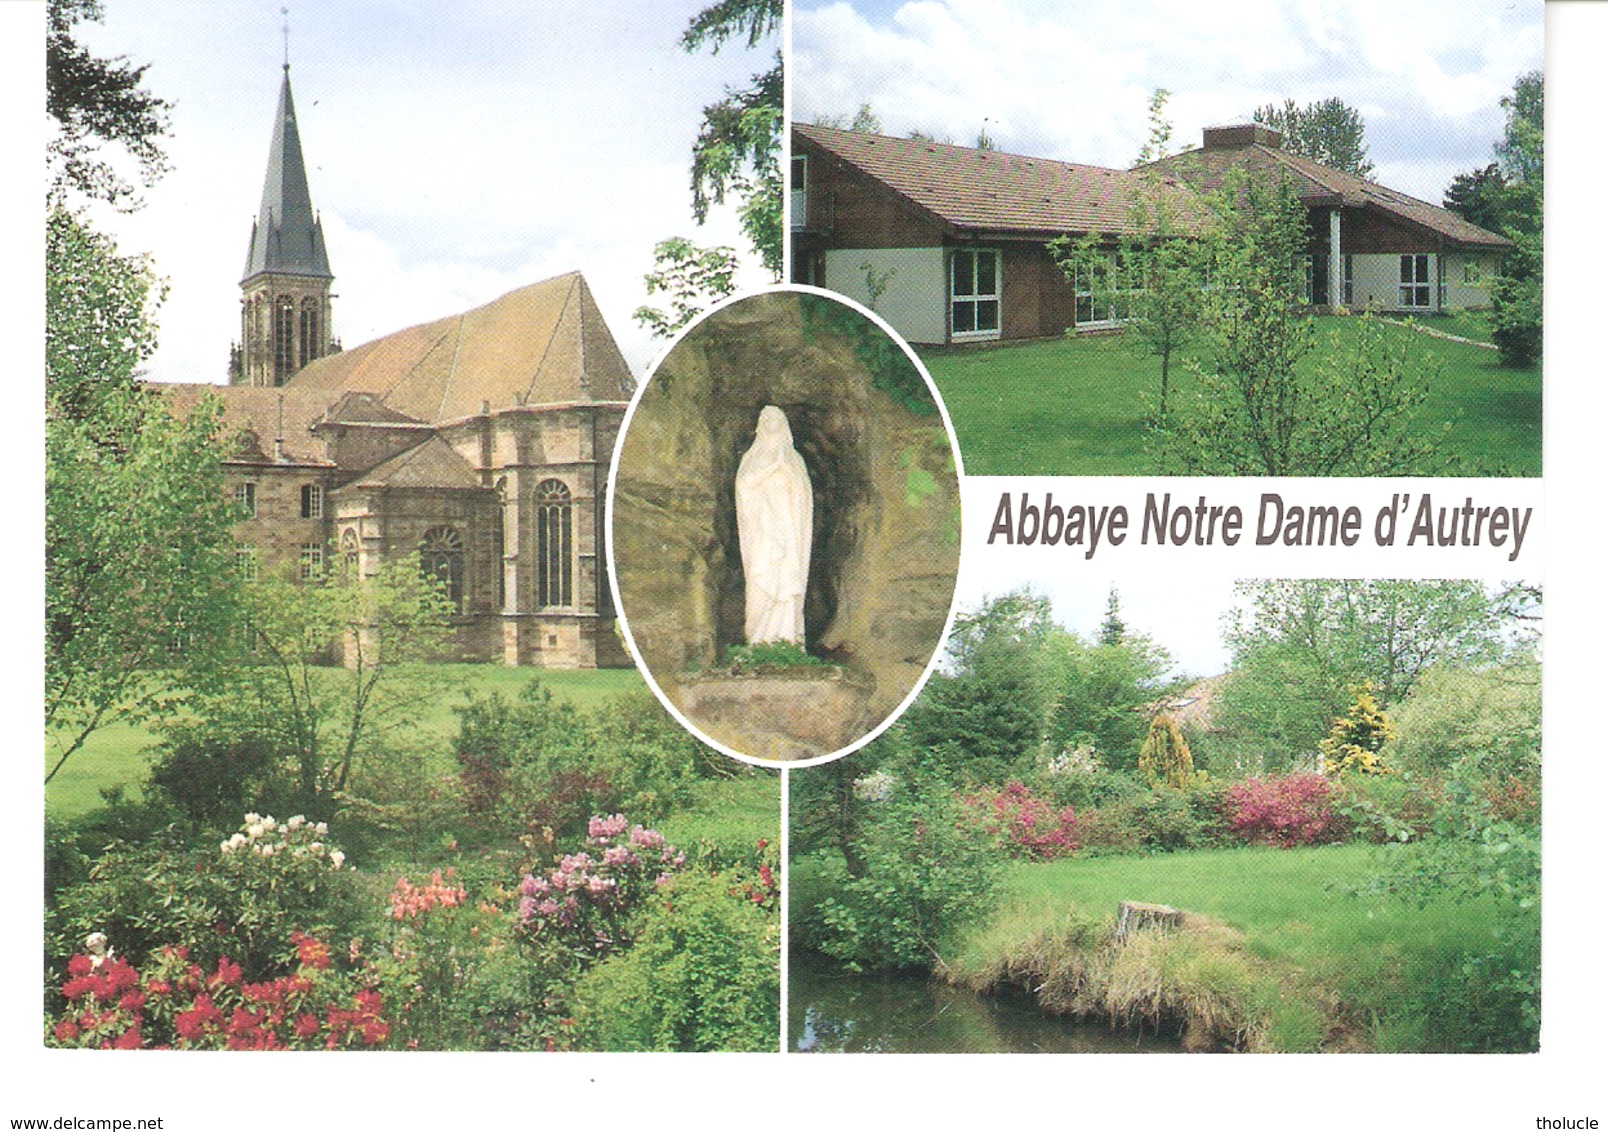 Autrey-(Rambervillers-Saint-Dié-Vosges)-Multivues-Abbaye Notre-Dame D'Autrey-statue-parc-Ecole-cours Agnès De Langeac - Rambervillers